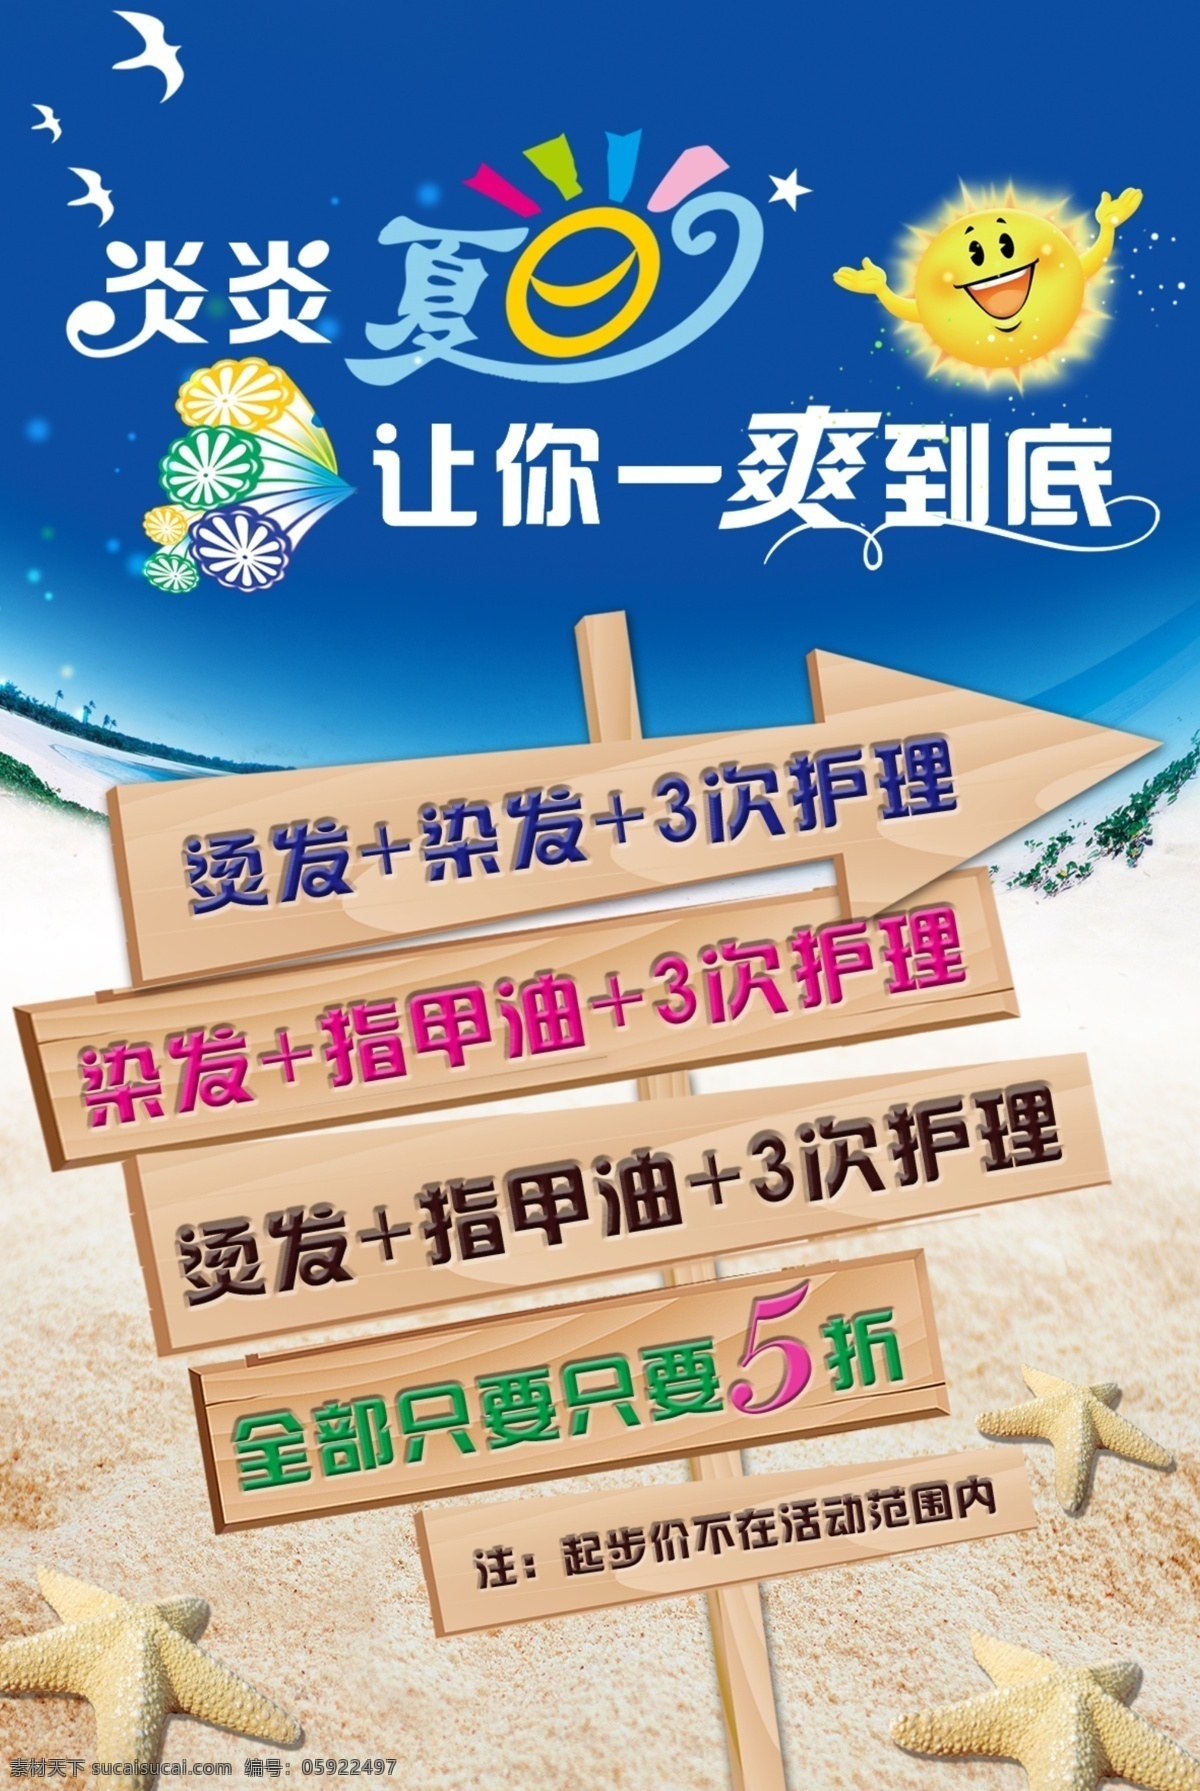 广告设计模板 海星 卡通太阳 沙滩 夏日活动 源文件 指示牌 夏日 活动 模板下载 其他海报设计